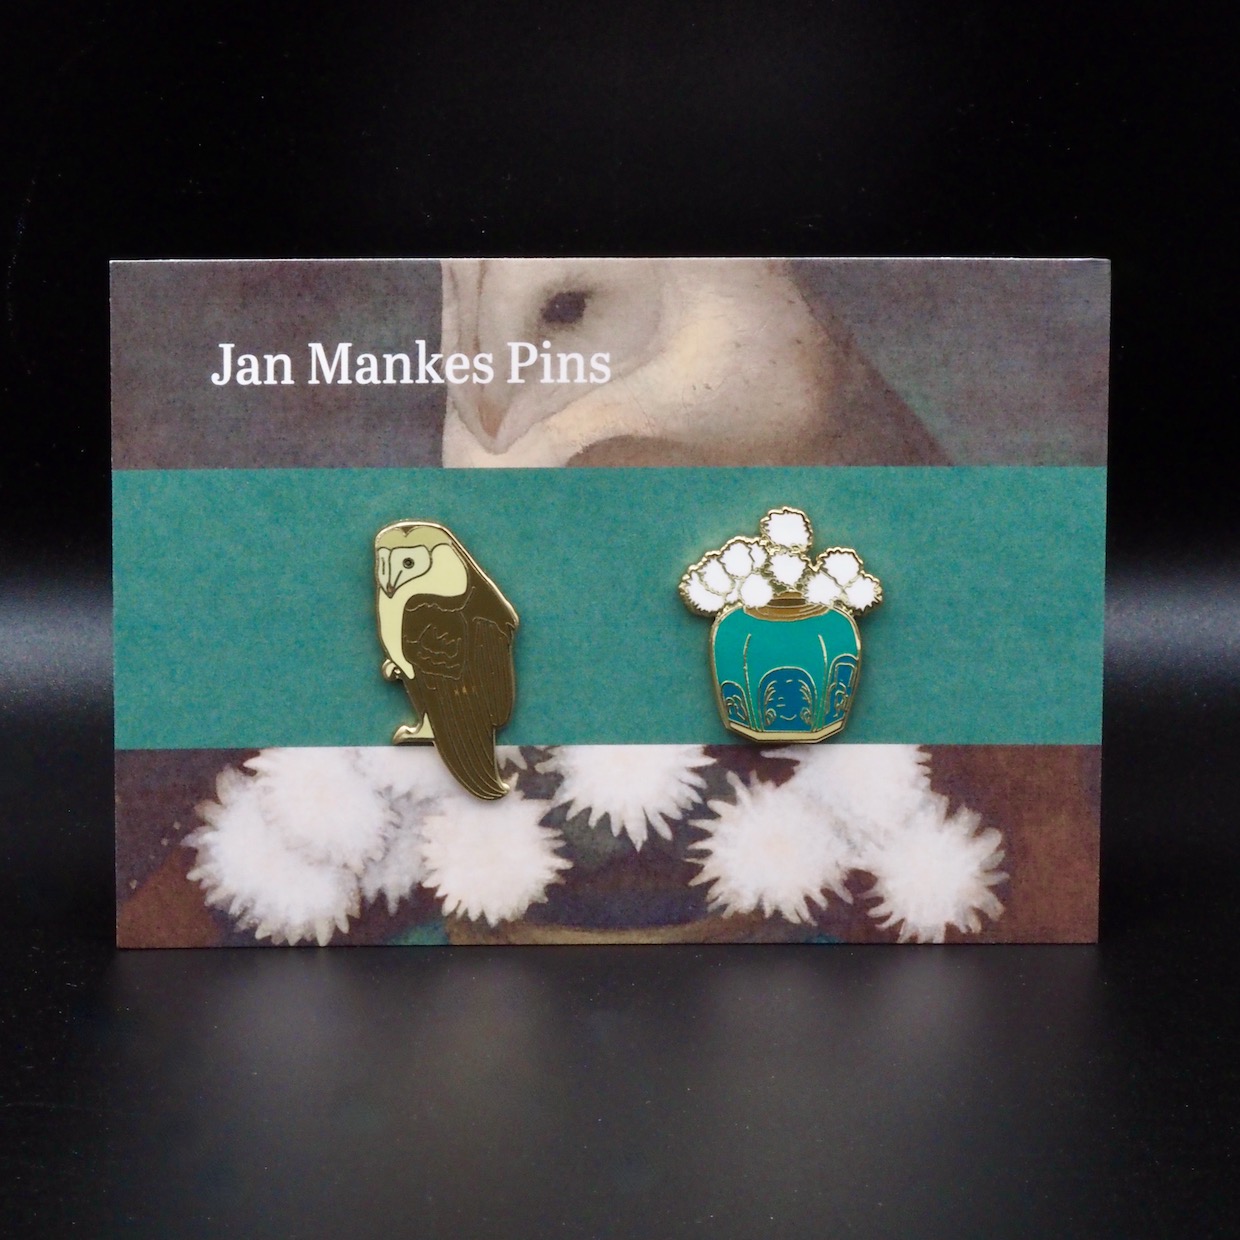 Jan Mankes Pins op gift card in huisstijl Museum MORE